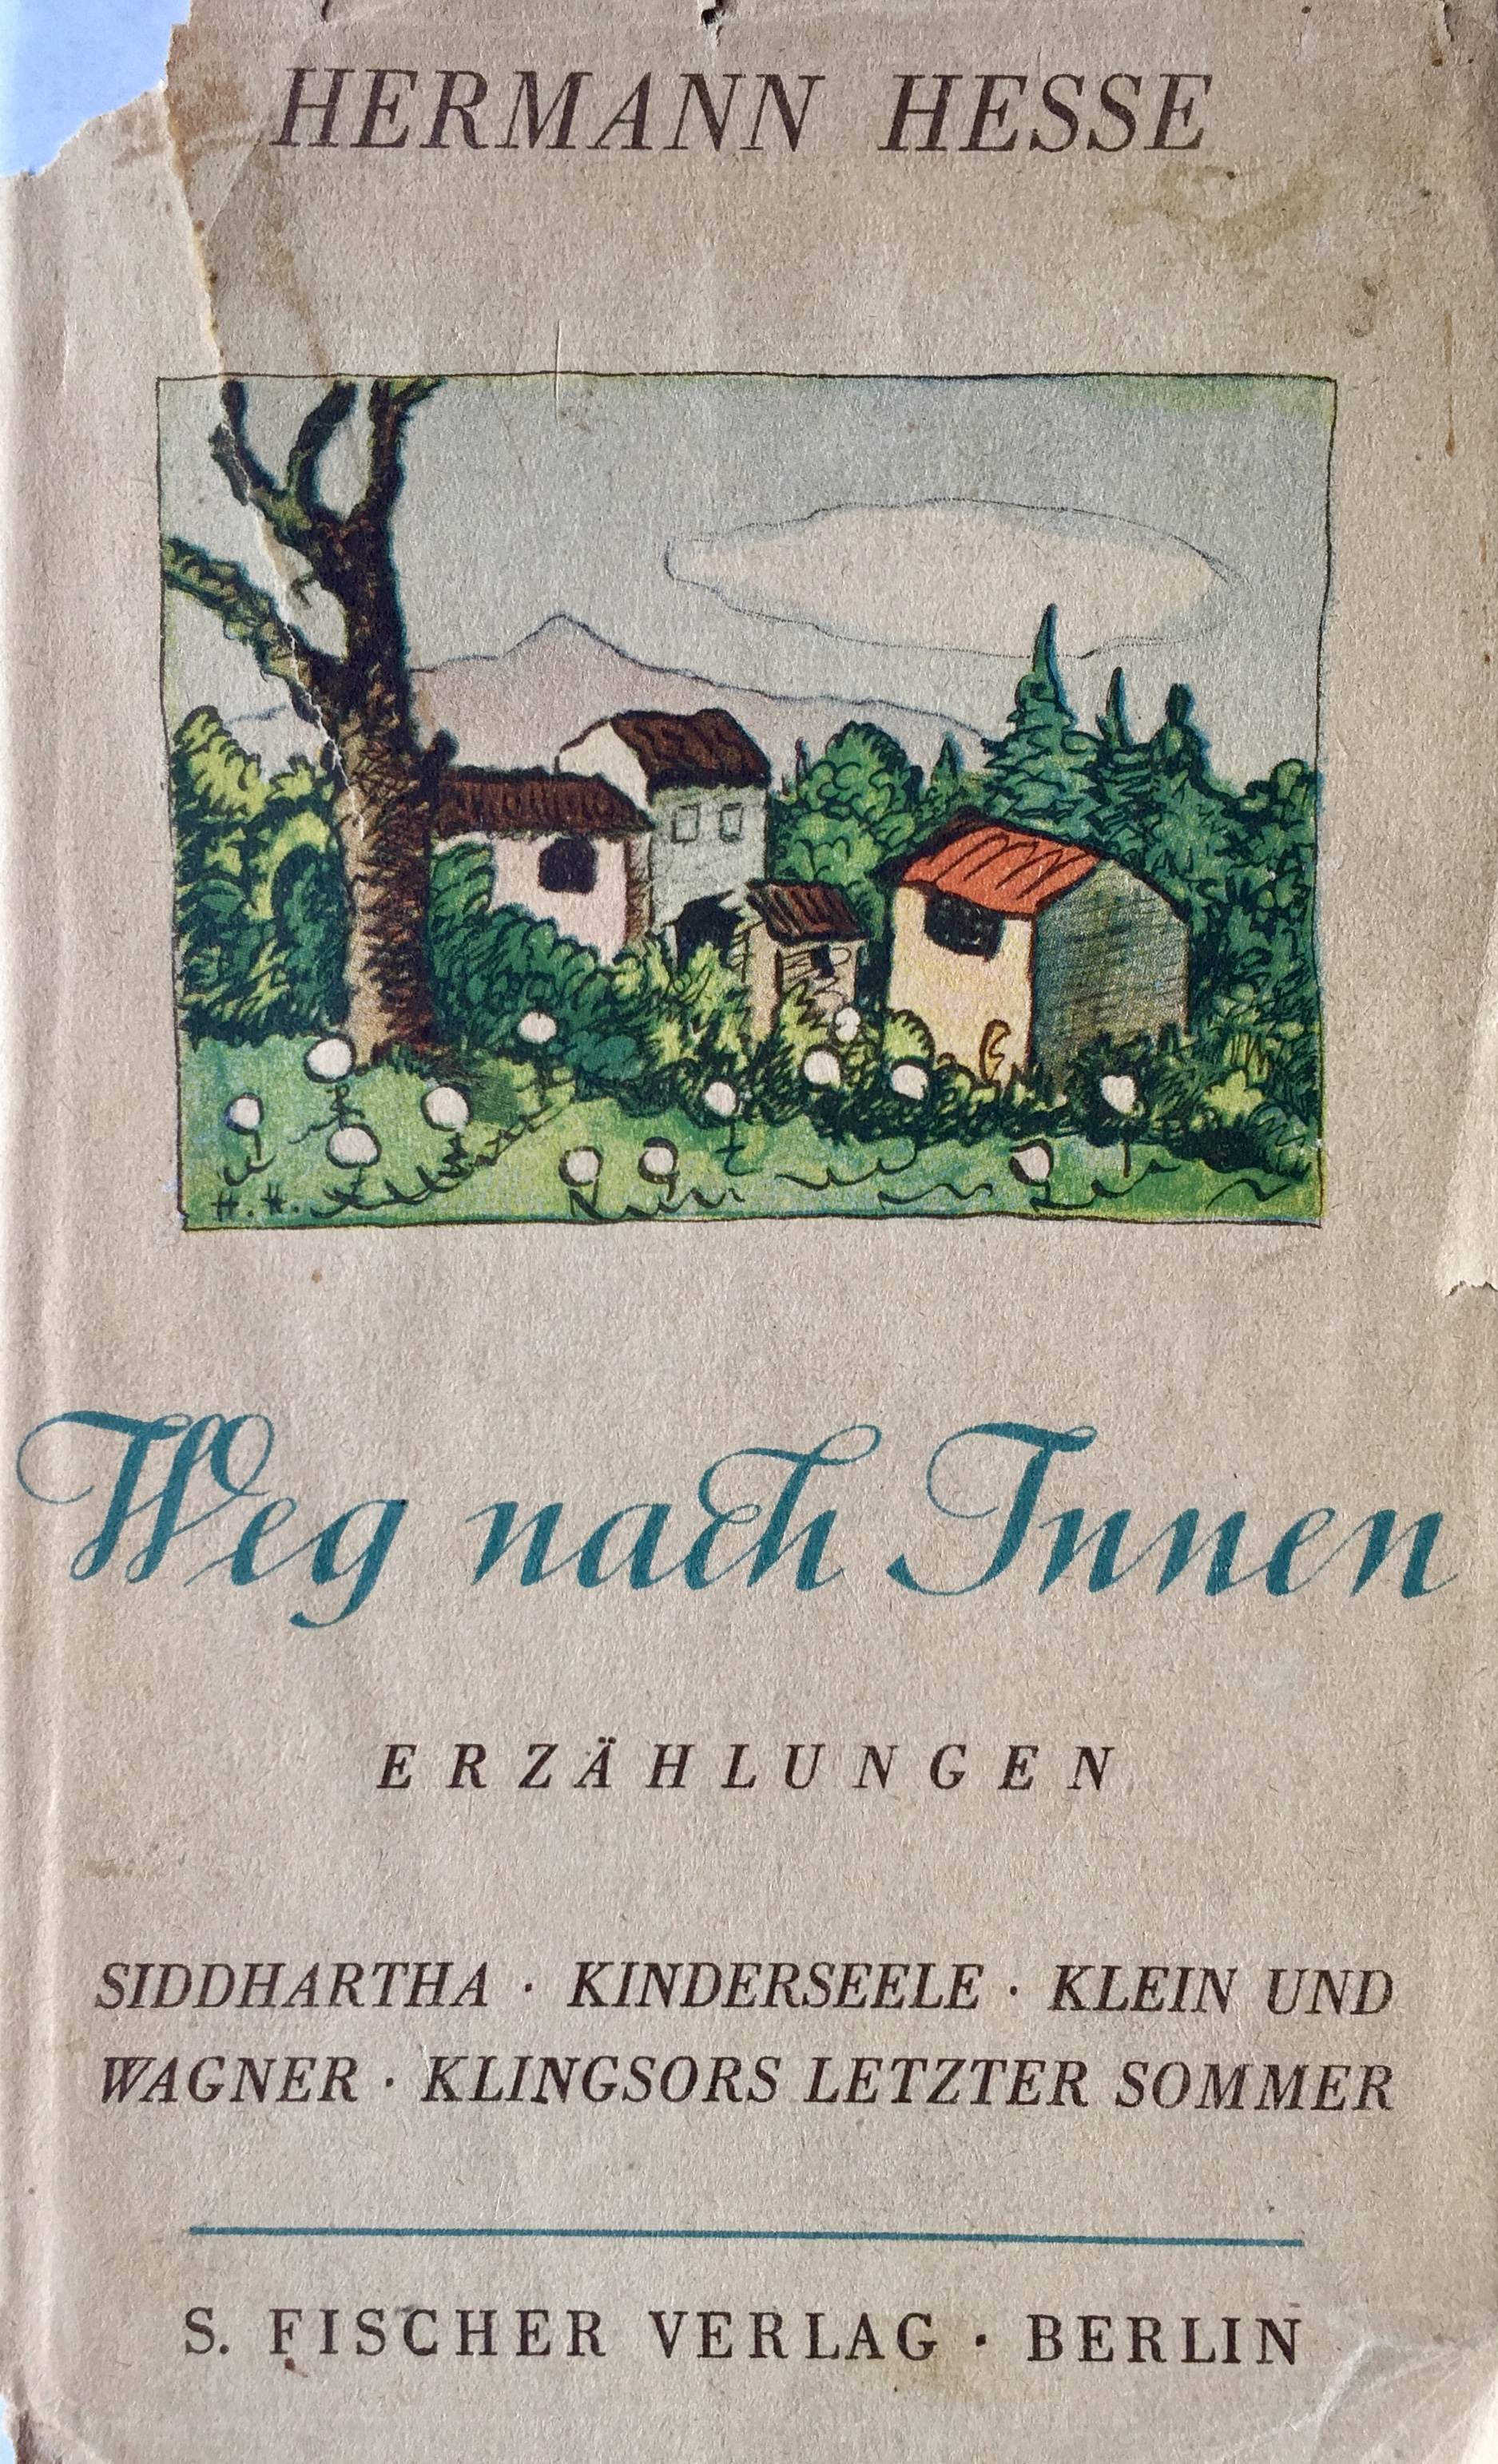 Hermann Hesse, Weg nach innen, 1940